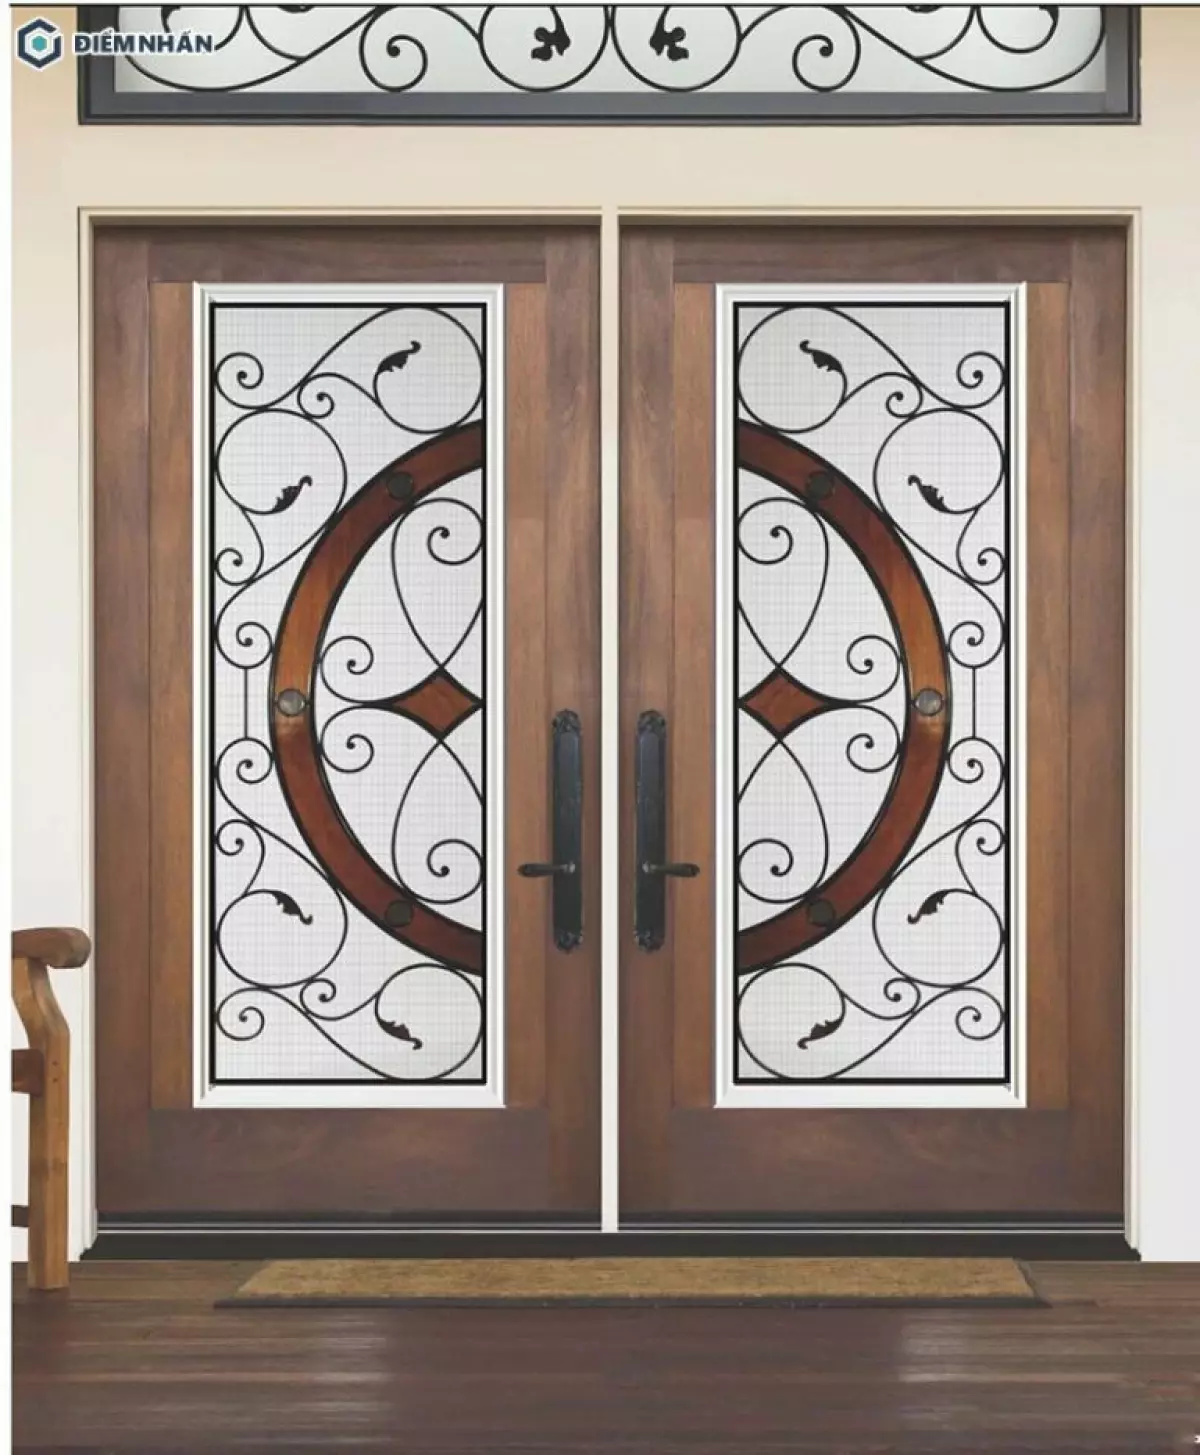 Mẫu cửa gỗ 2 cánh có gắn kính nổi bật với đường nét hoa văn uốn lượn